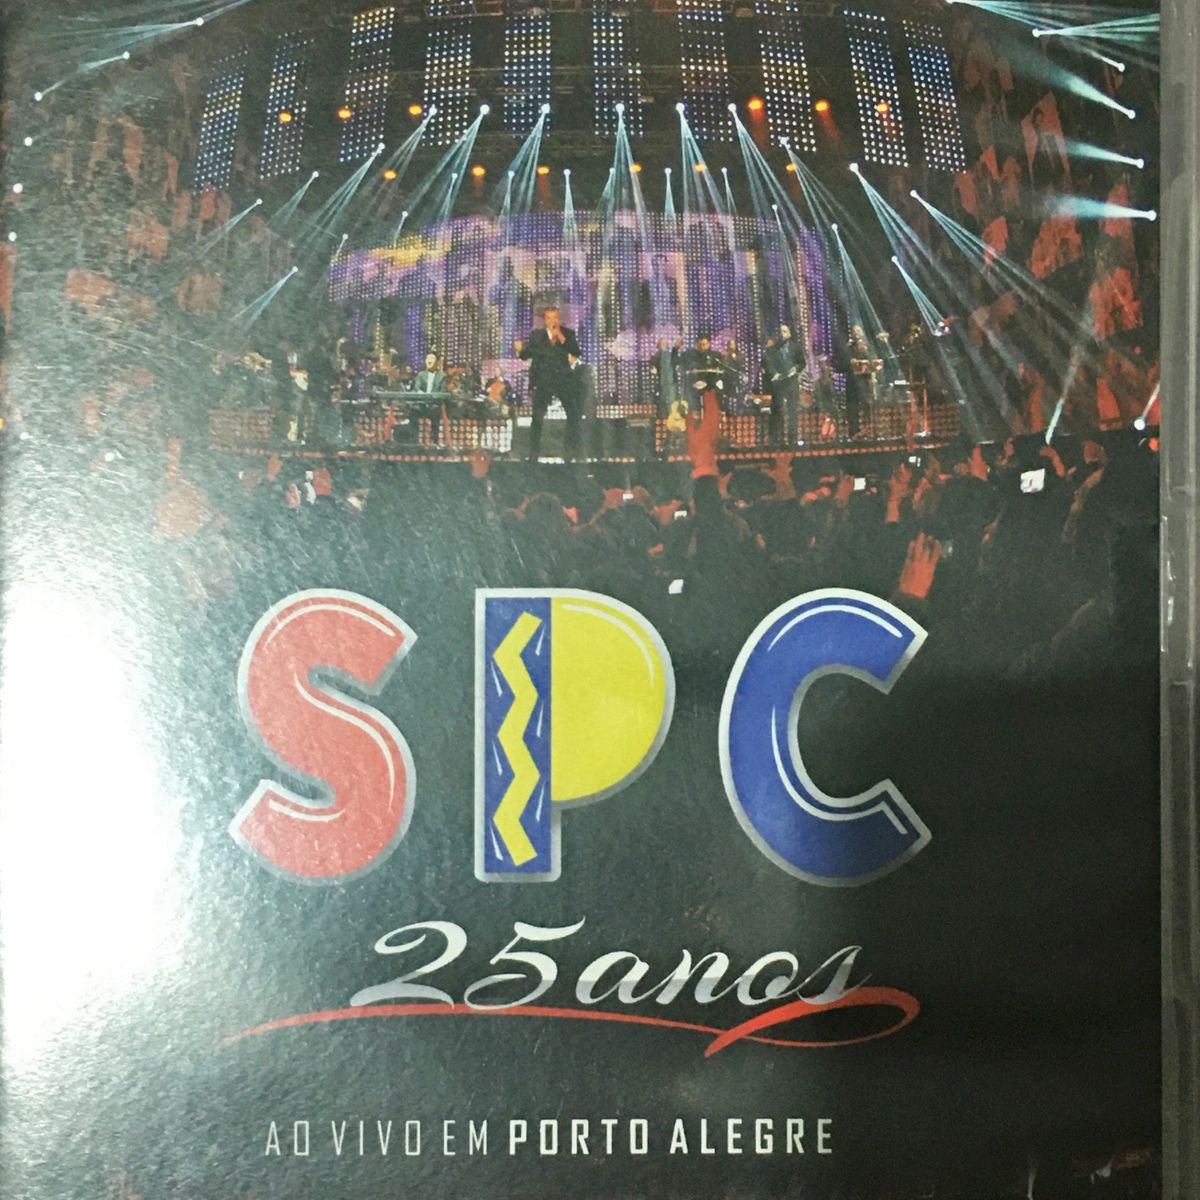 Dvd Só Pra Contrariar- Spc Ao Vivo Em Porto Alegre 25 Anos